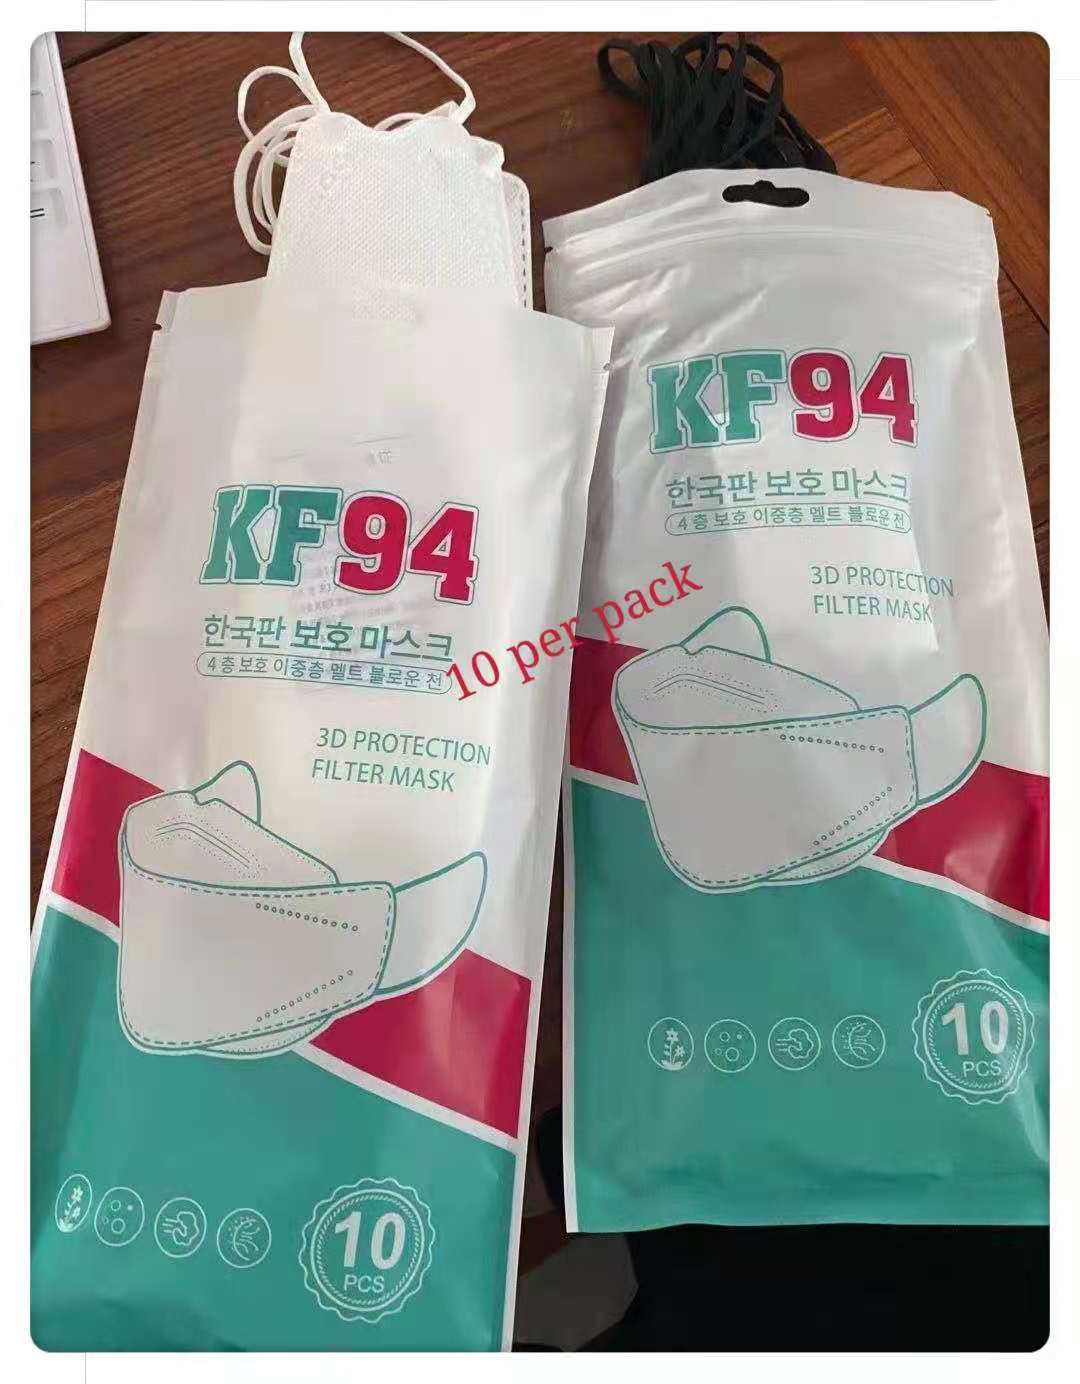 หน้ากากอนามัยทรงเกาหลี KF94 Mask หนา4ชั้น แมสทรงเกาหลี PM2.5 [10ชิ้น]พร้อมส่งในไทย